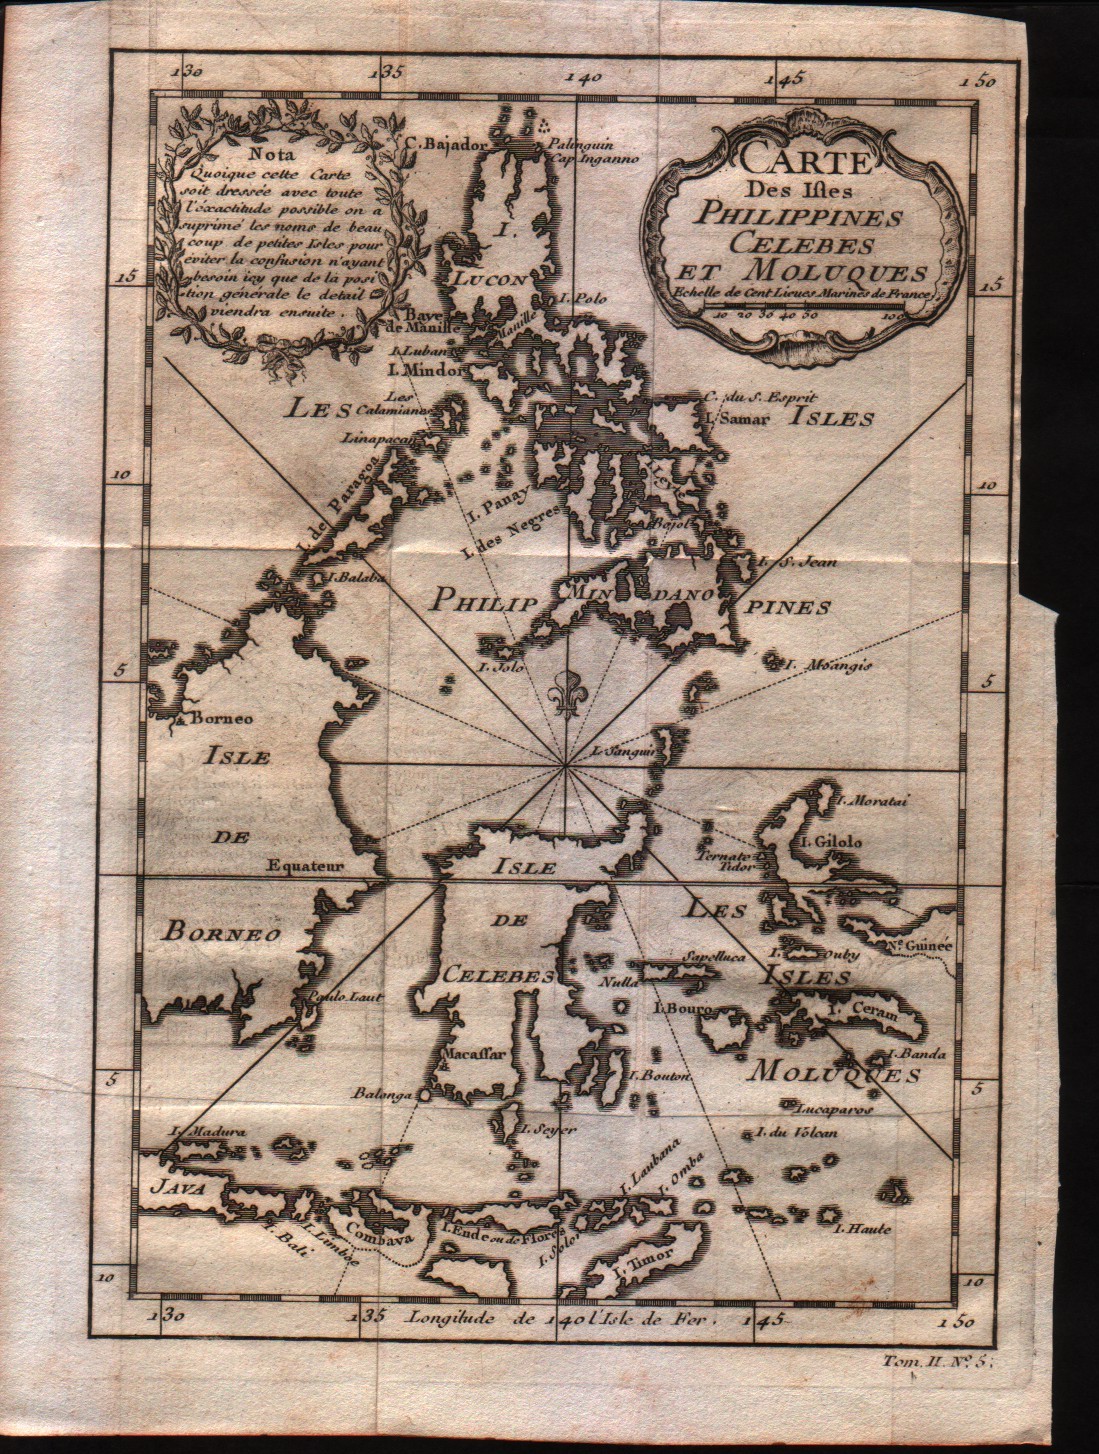 Carte des Isles Philippines Celebes et Moluques 